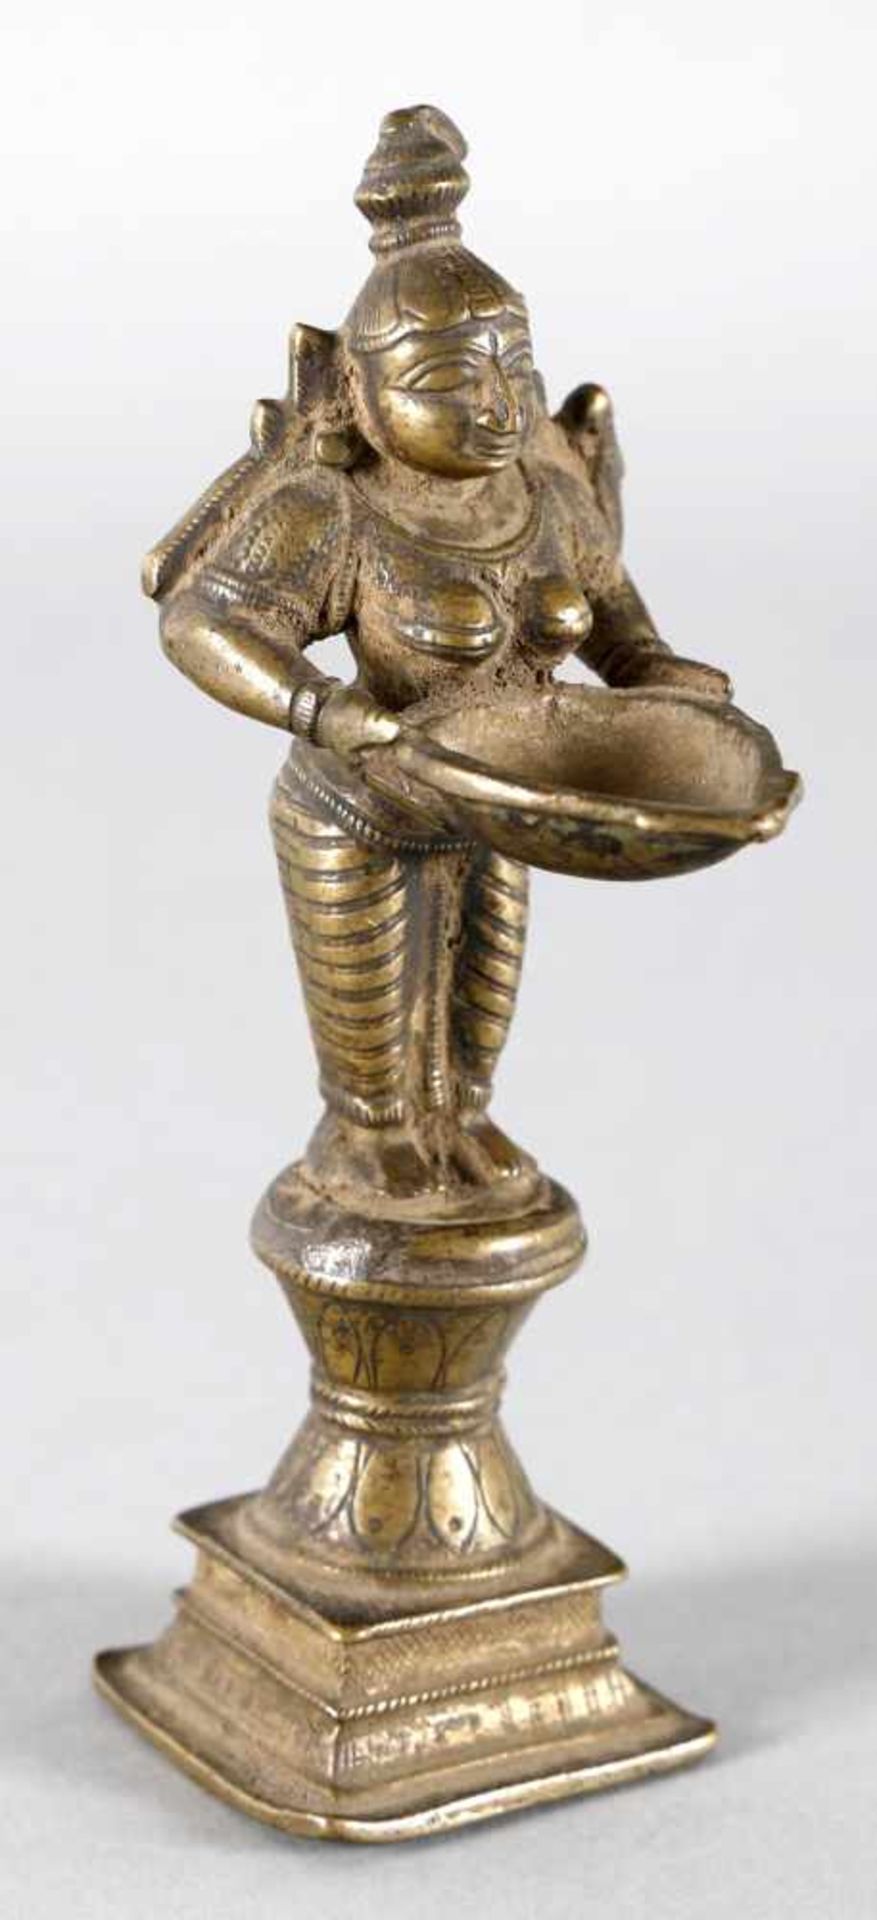 Laksmi-Öllampe aus Bronze, Südostasien, wohl 19./20. Jh.die auf einem mehrstufigen Sockel aufrecht